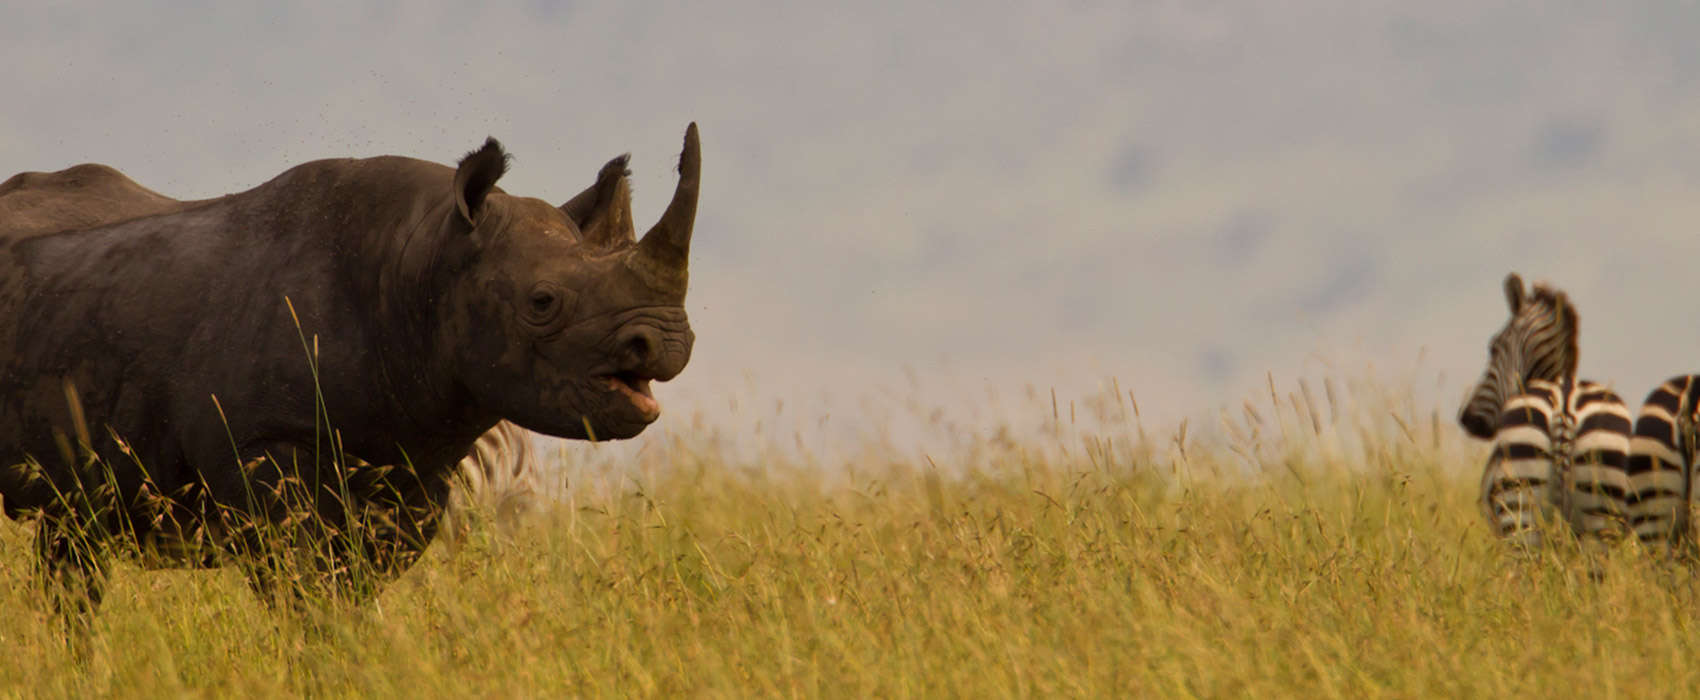 African Masai Mara Safari rhino